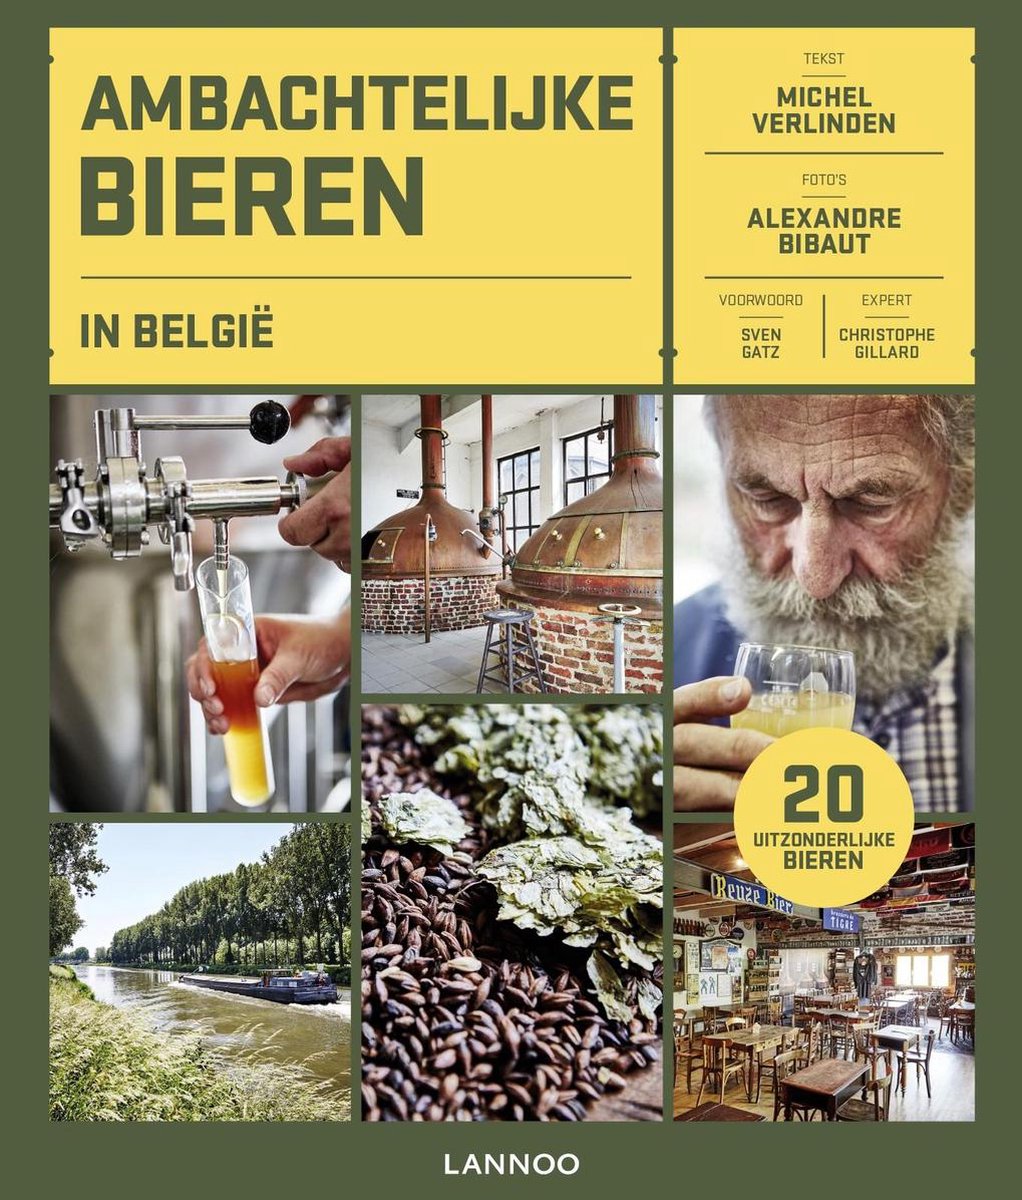 Ambachtelijke bieren in Belgie